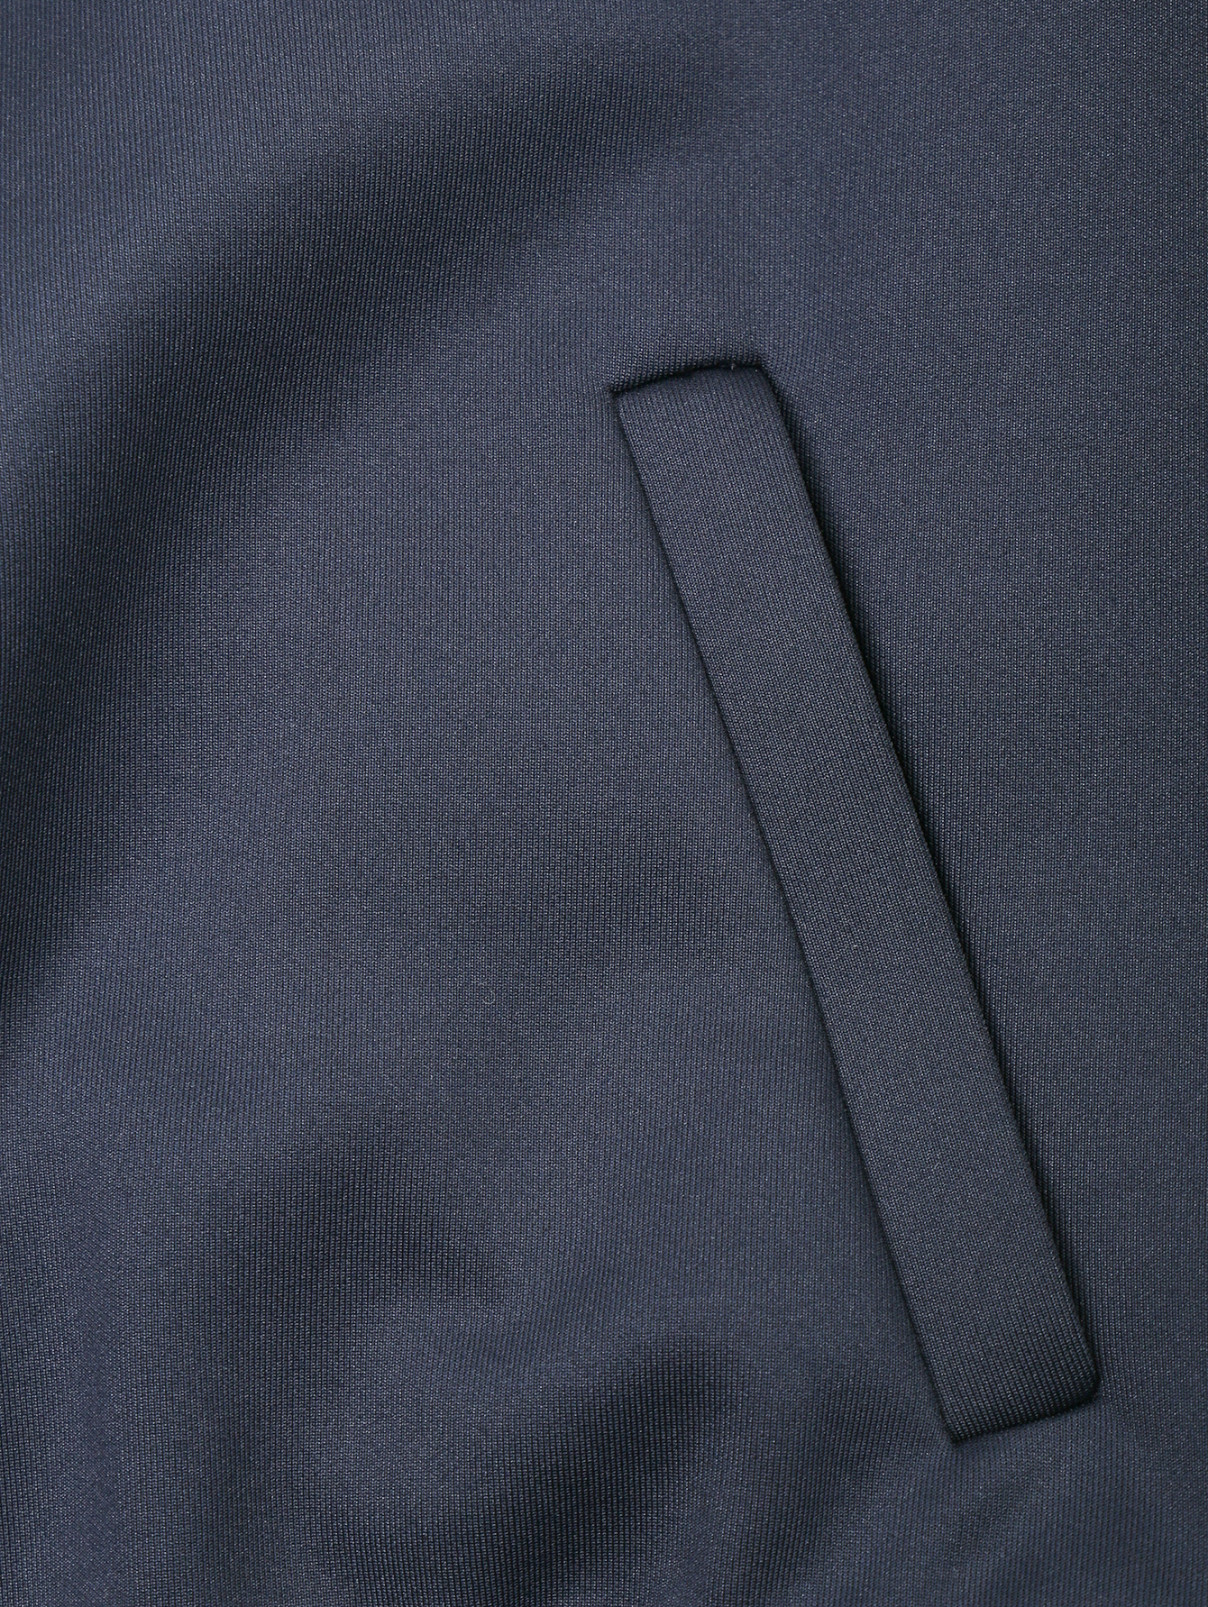 Бомбер на молнии с декоративной отделкой 3.1 Phillip Lim  –  Деталь  – Цвет:  Синий